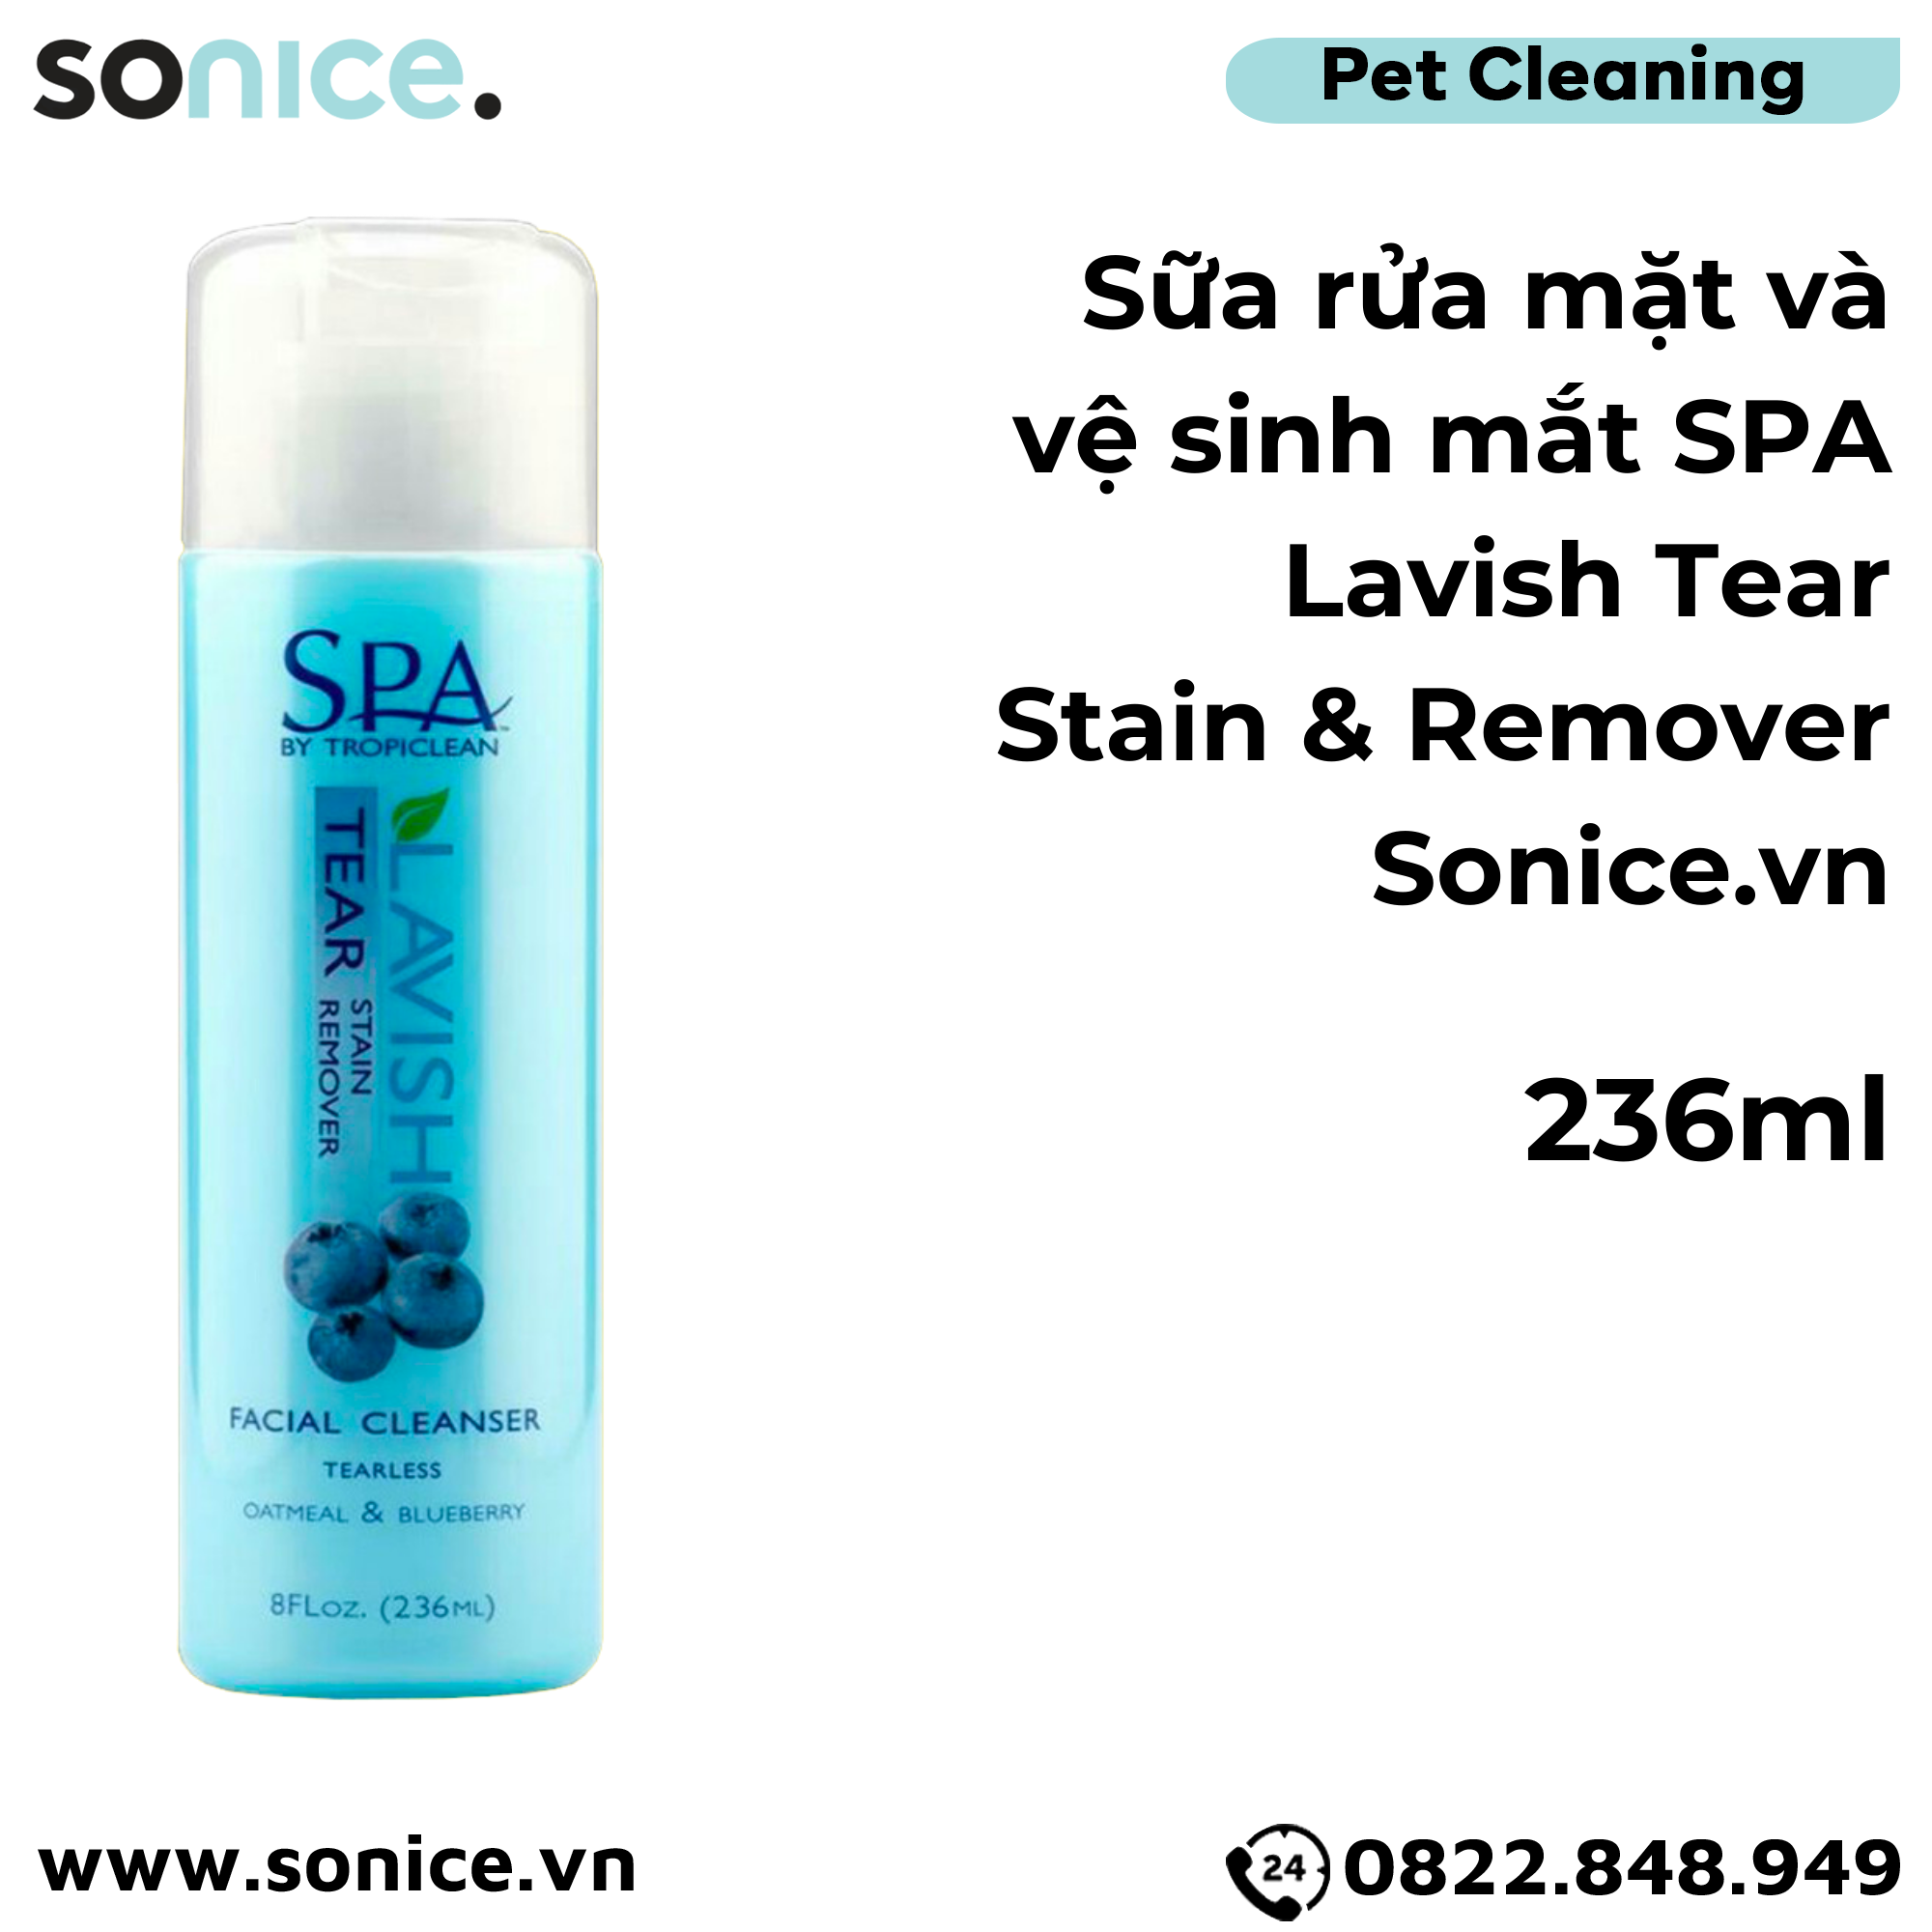  Sữa rửa mặt và vệ sinh mắt SPA Lavish Tear Stain Remover 236ml - Hương việt quốc SONICE. 